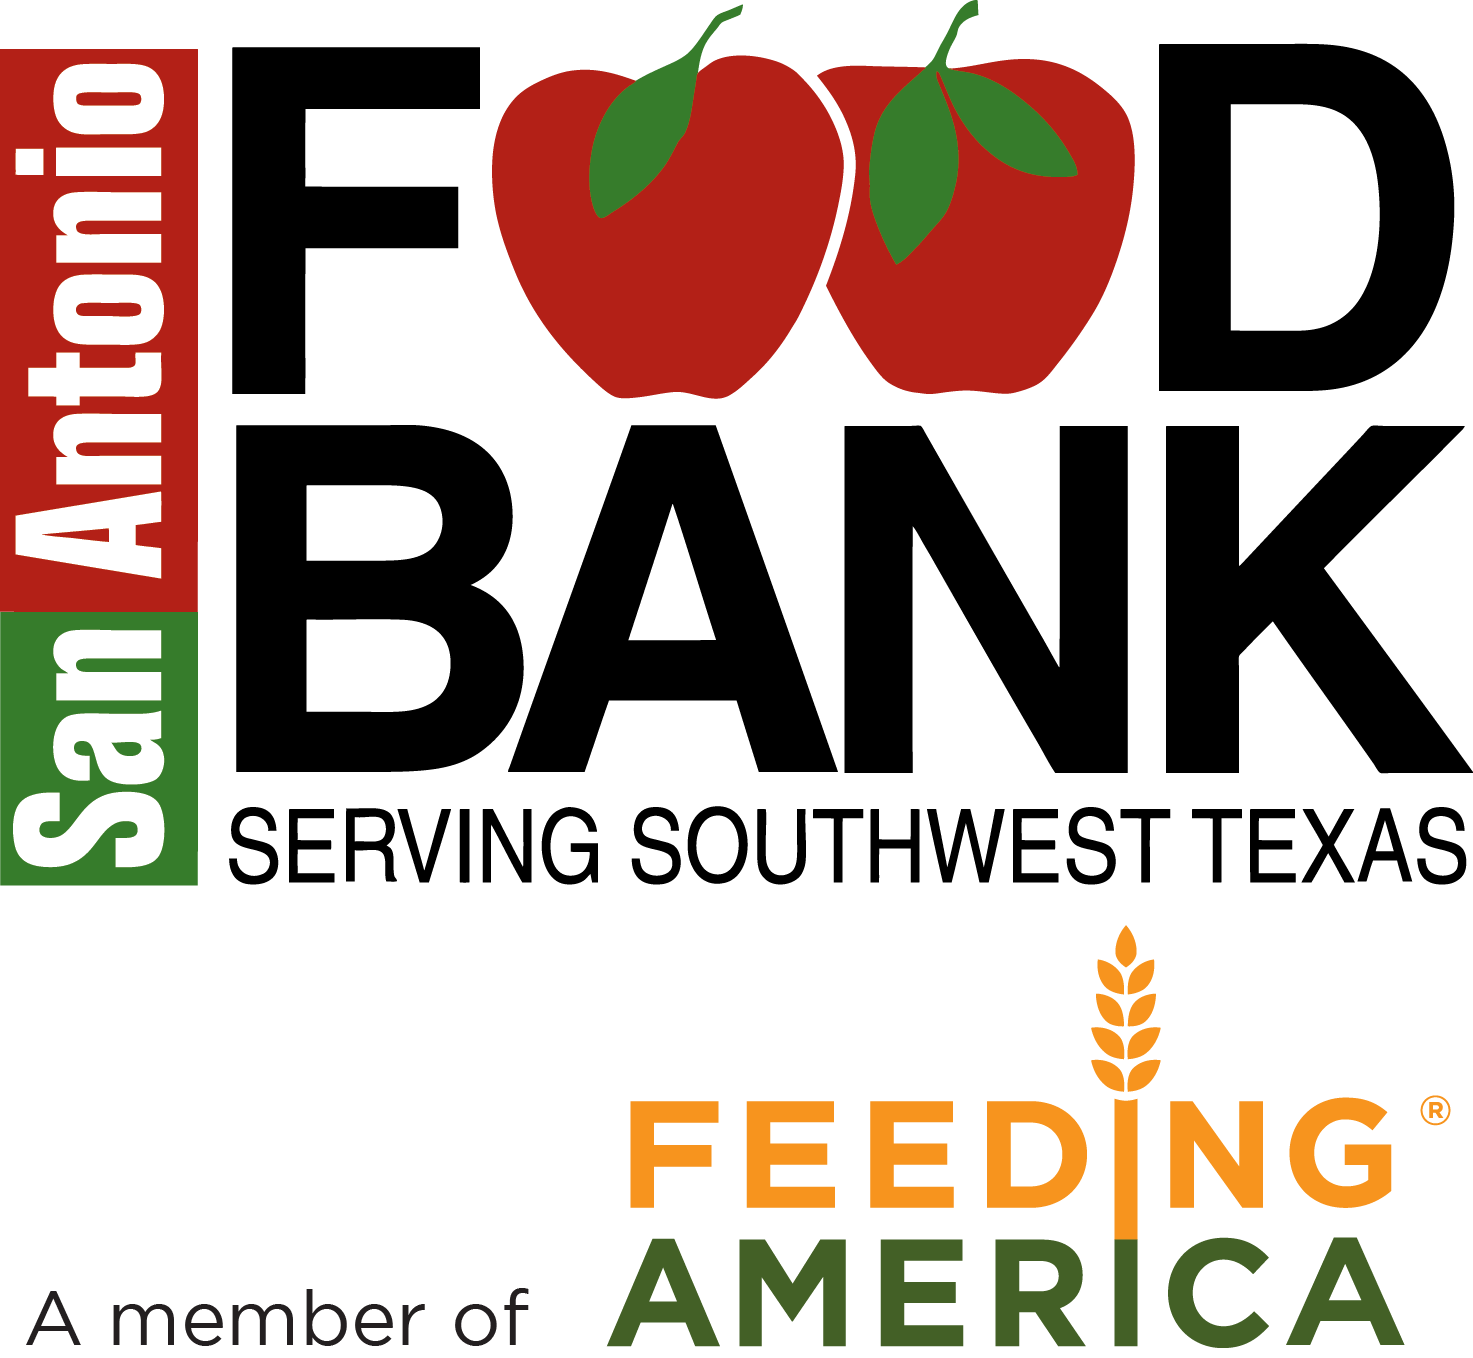 SA Food Bank Logo